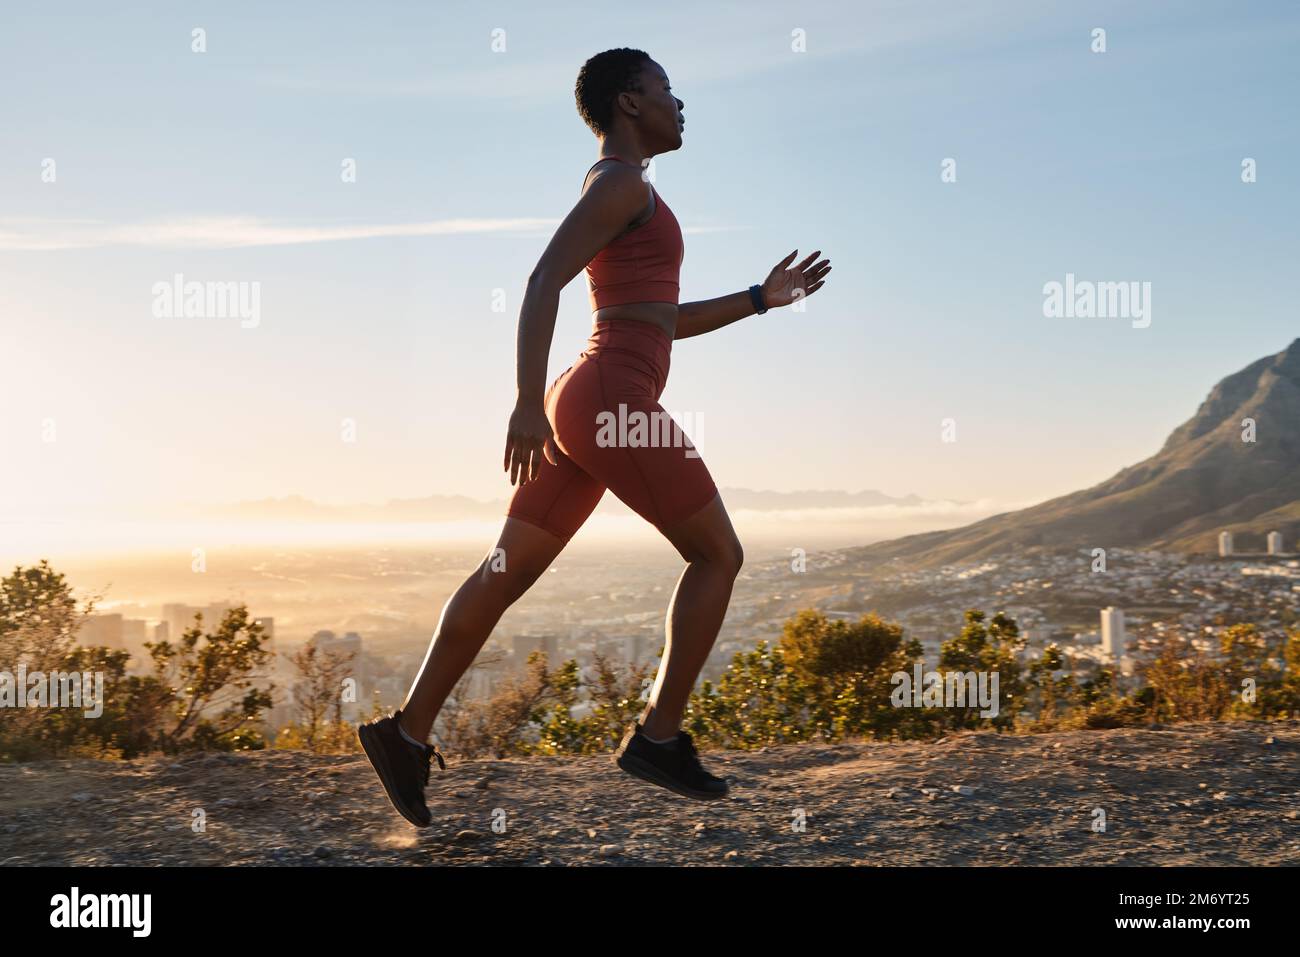 Joven Mujer Trail Running En Pico De Montaña Fotos, retratos, imágenes y  fotografía de archivo libres de derecho. Image 55953067